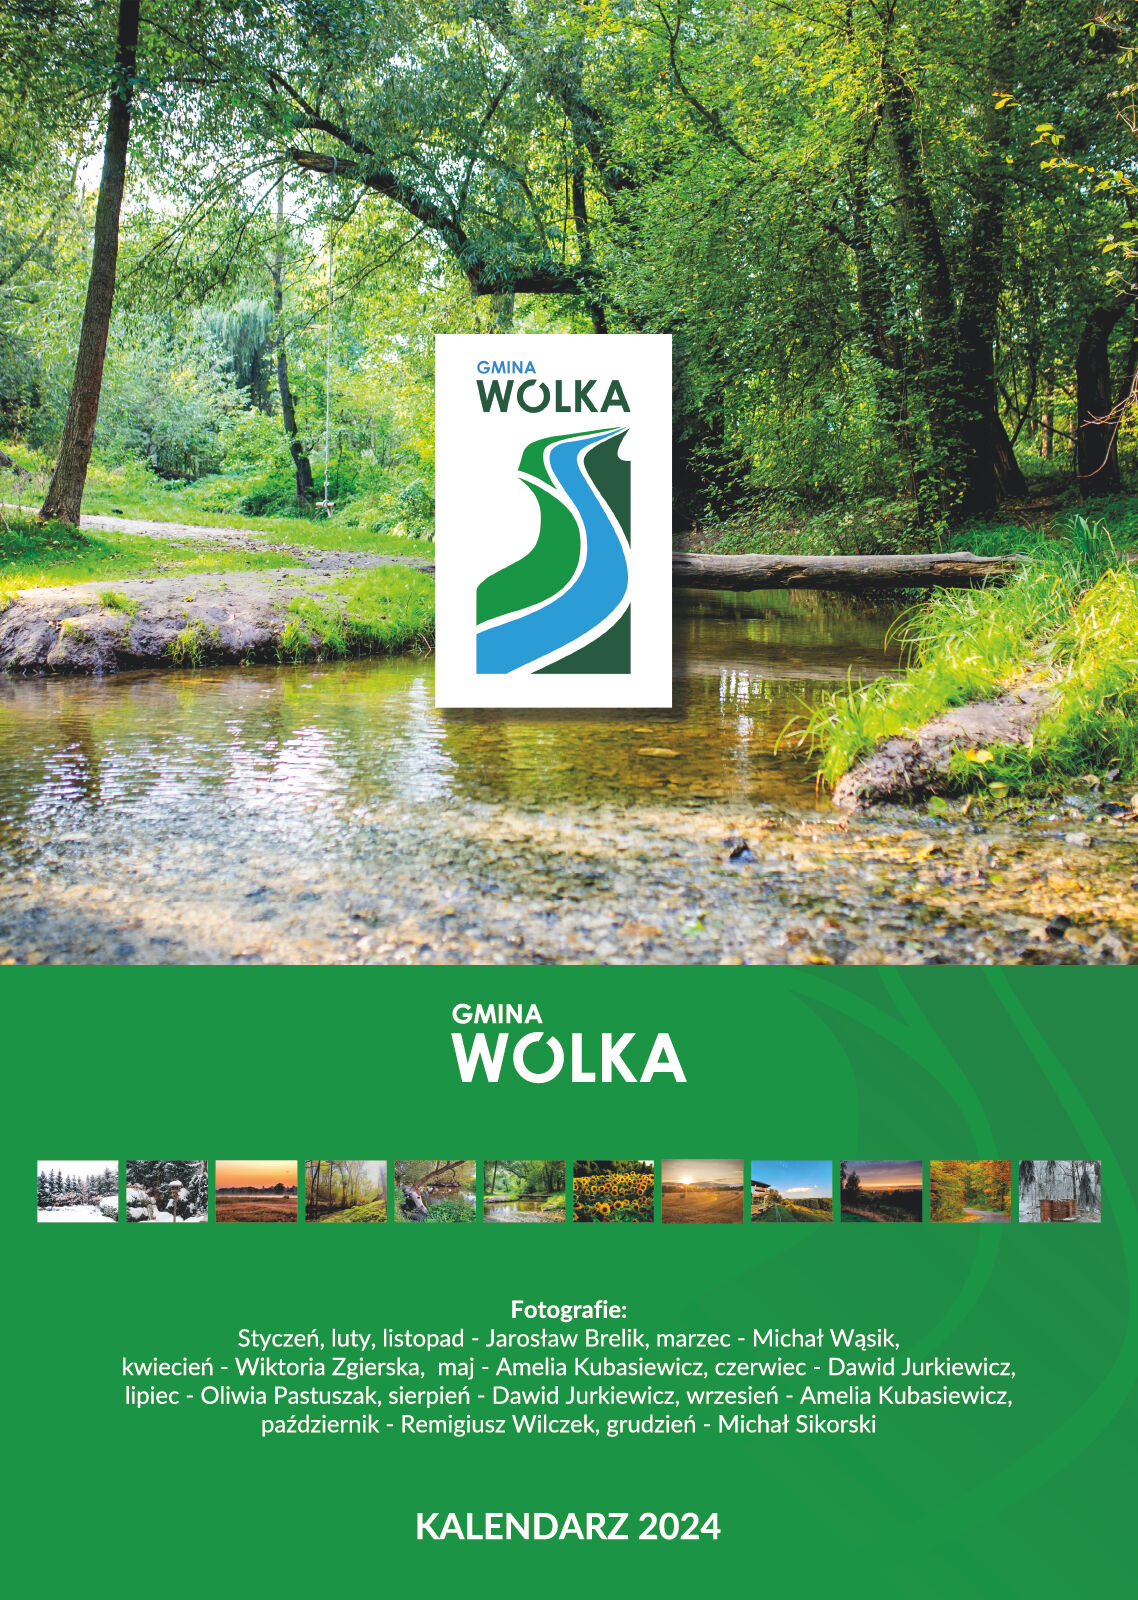 Zdjęcie przedstawia okładkę kalendarza na rok 2024 z tytułem GMINA WÓLKA z grafiką stylizowaną na zielono-niebieską falę. Poniżej, pas pól z miesięcznymi zdjęciami przyrody i napisy z kredytami fotograficznymi.